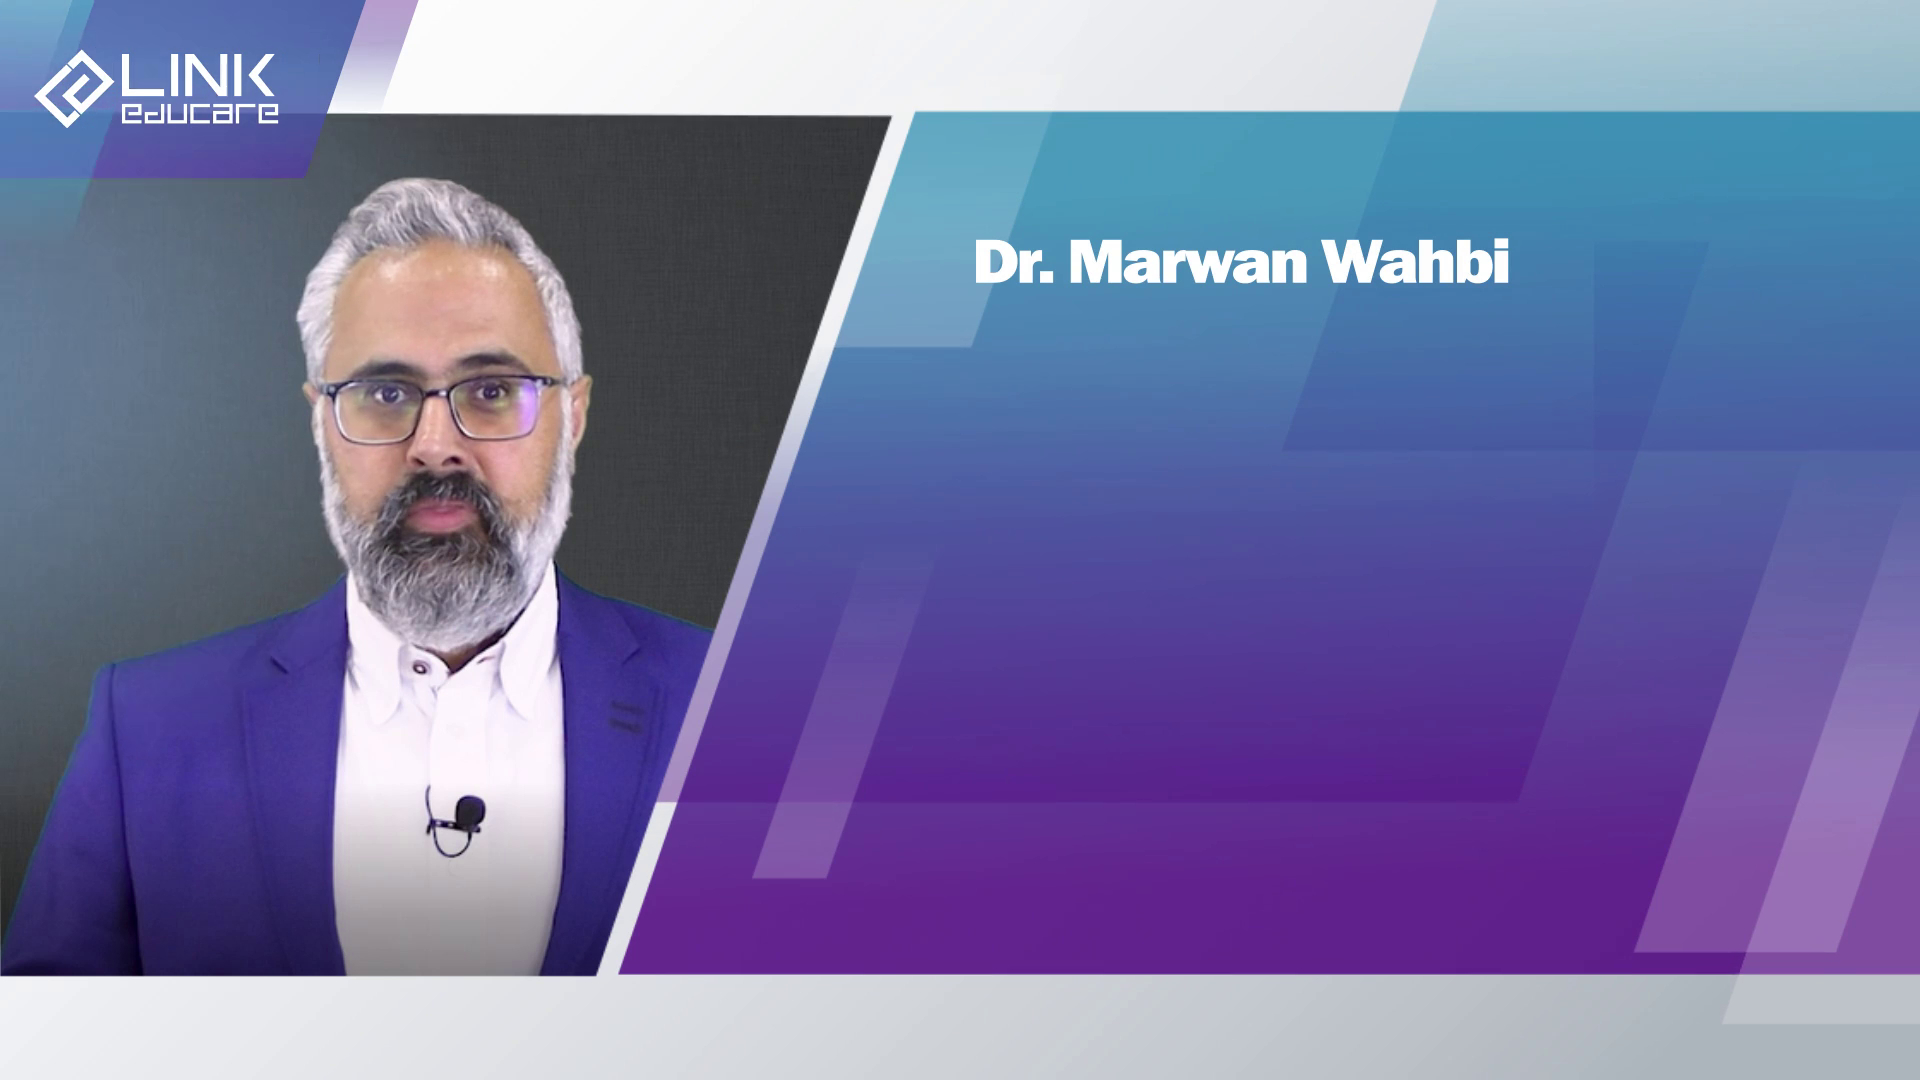 Dr. Marwan Wahbi